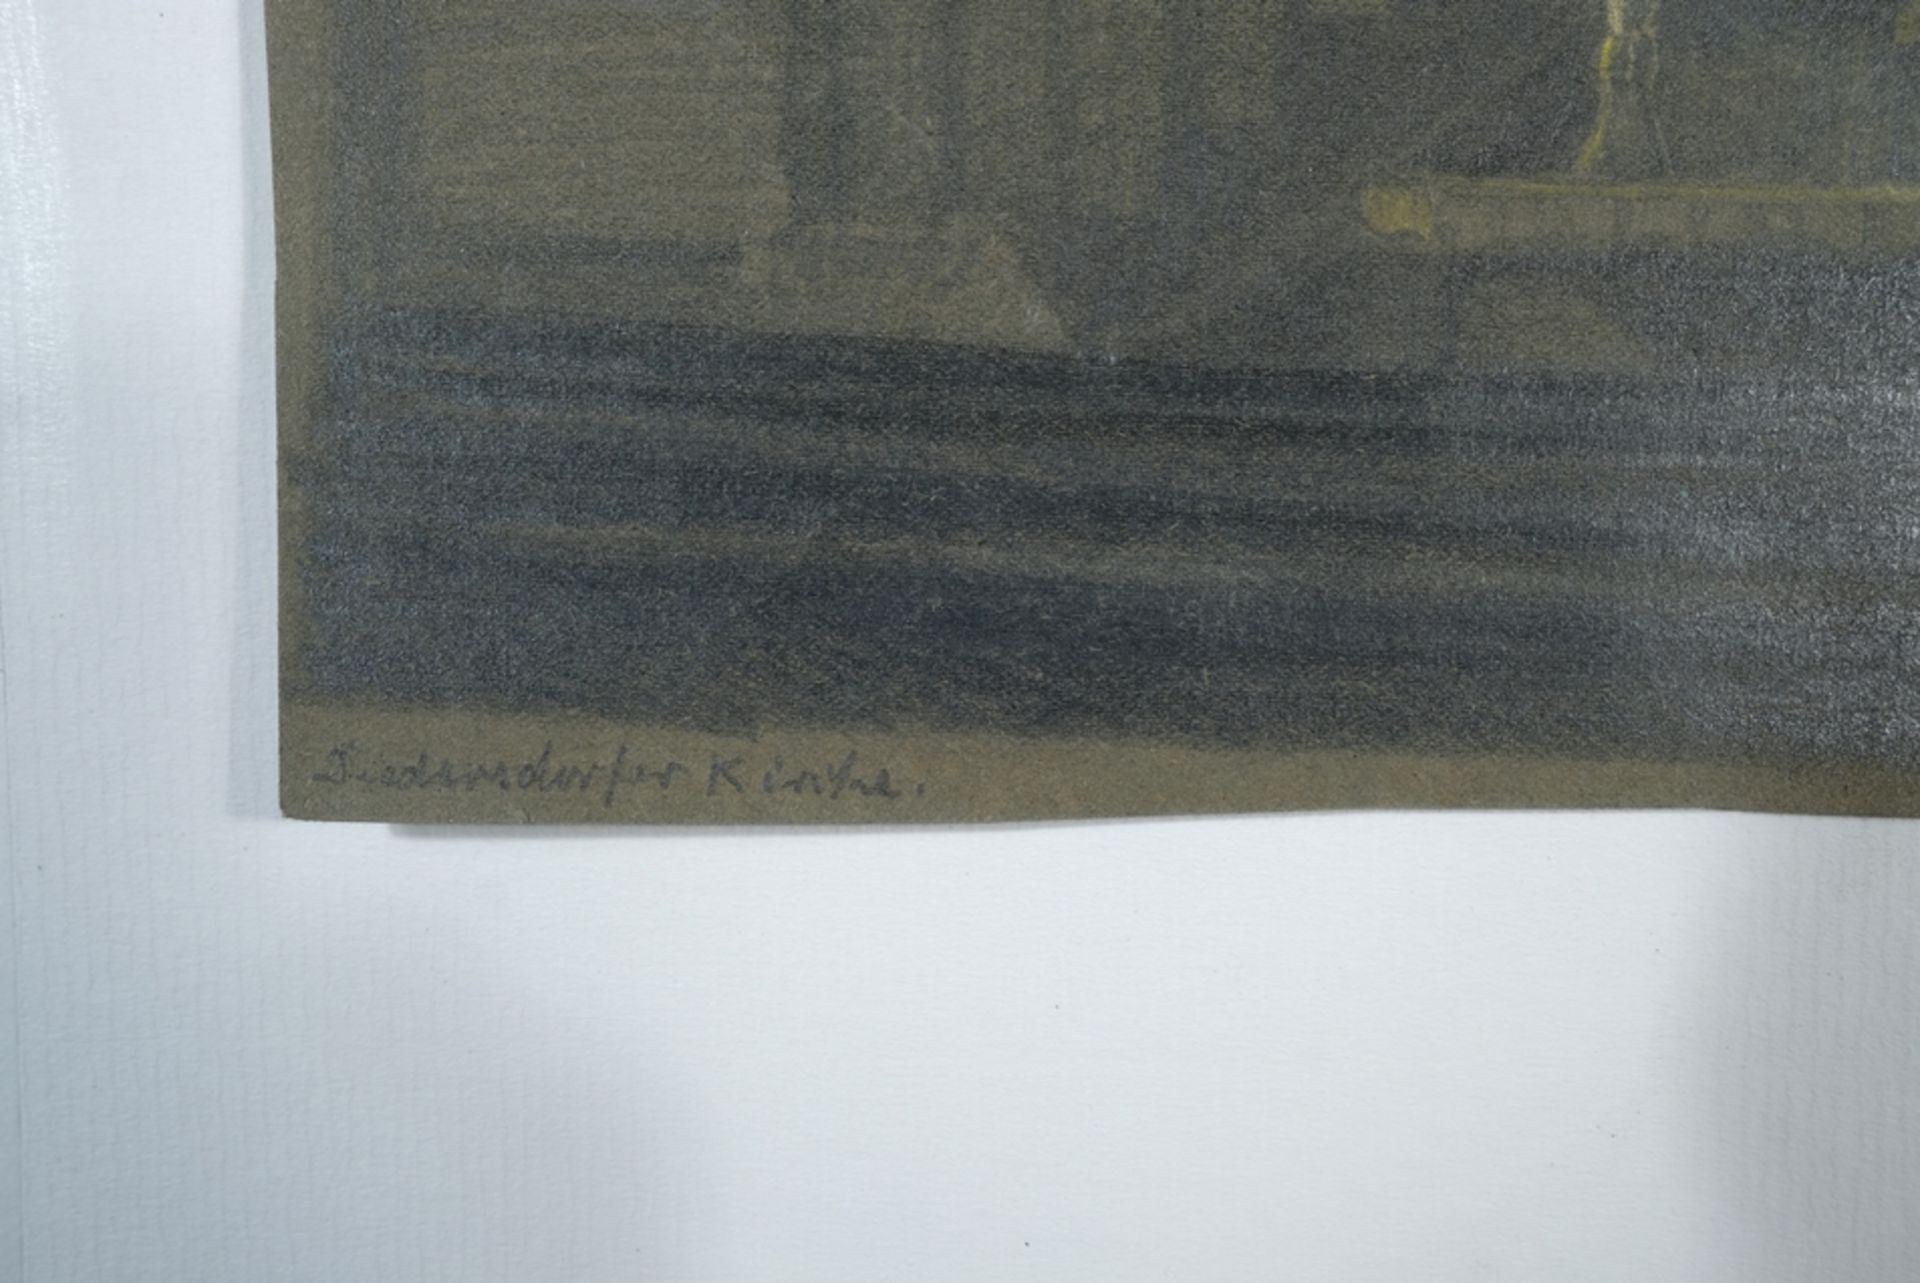 Schön, Werner (1893-1970) "Diedersdorfer Kirche", pencil drawing on dark paper.  - Image 4 of 4